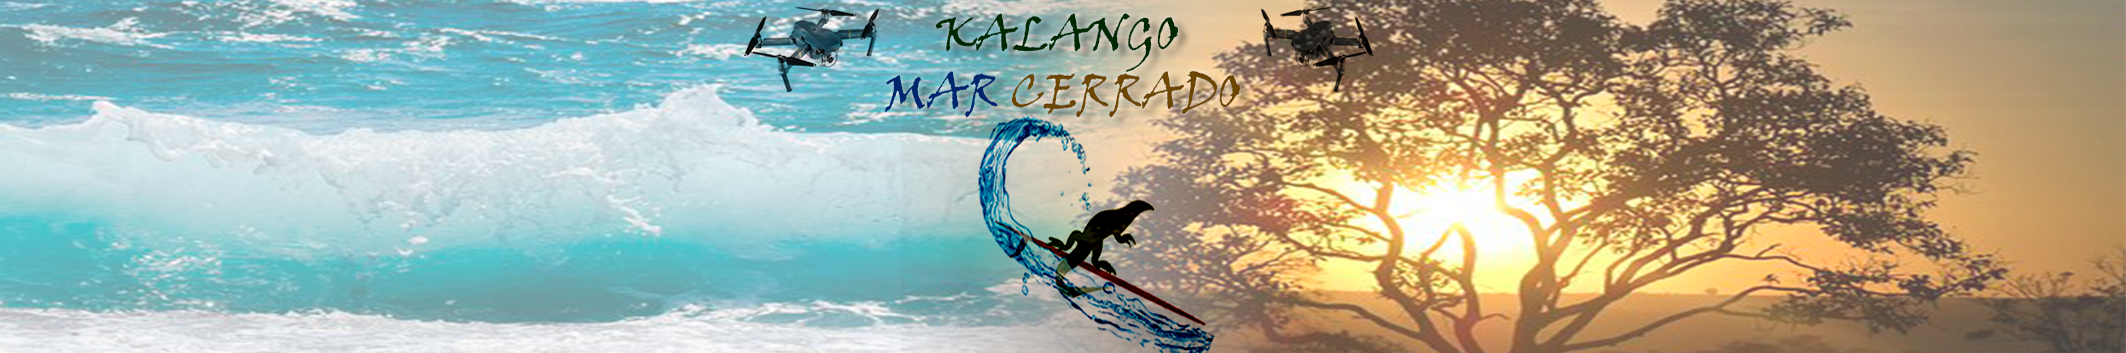 KALANGO MAR CERRADO's profile banner